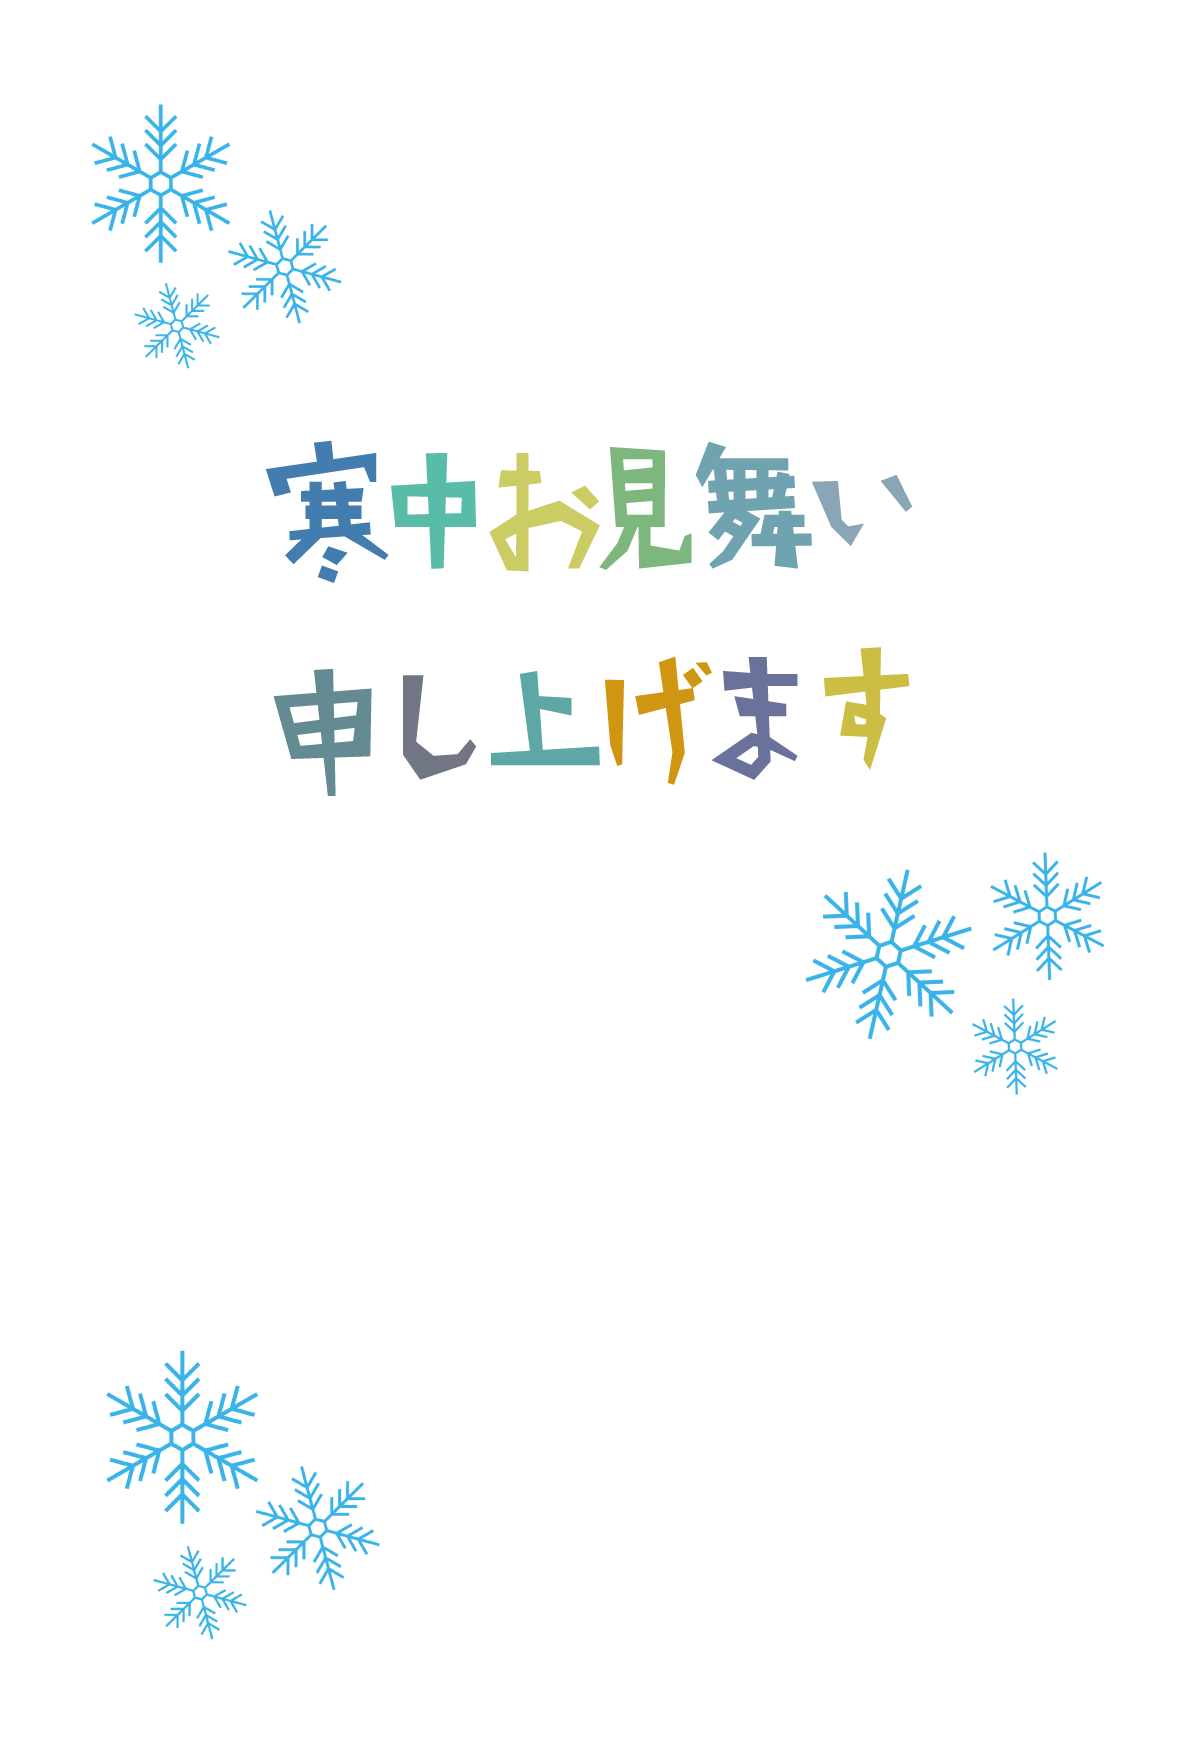 寒中見舞い シンプルテンプレート 雪 02 無料 イラストk